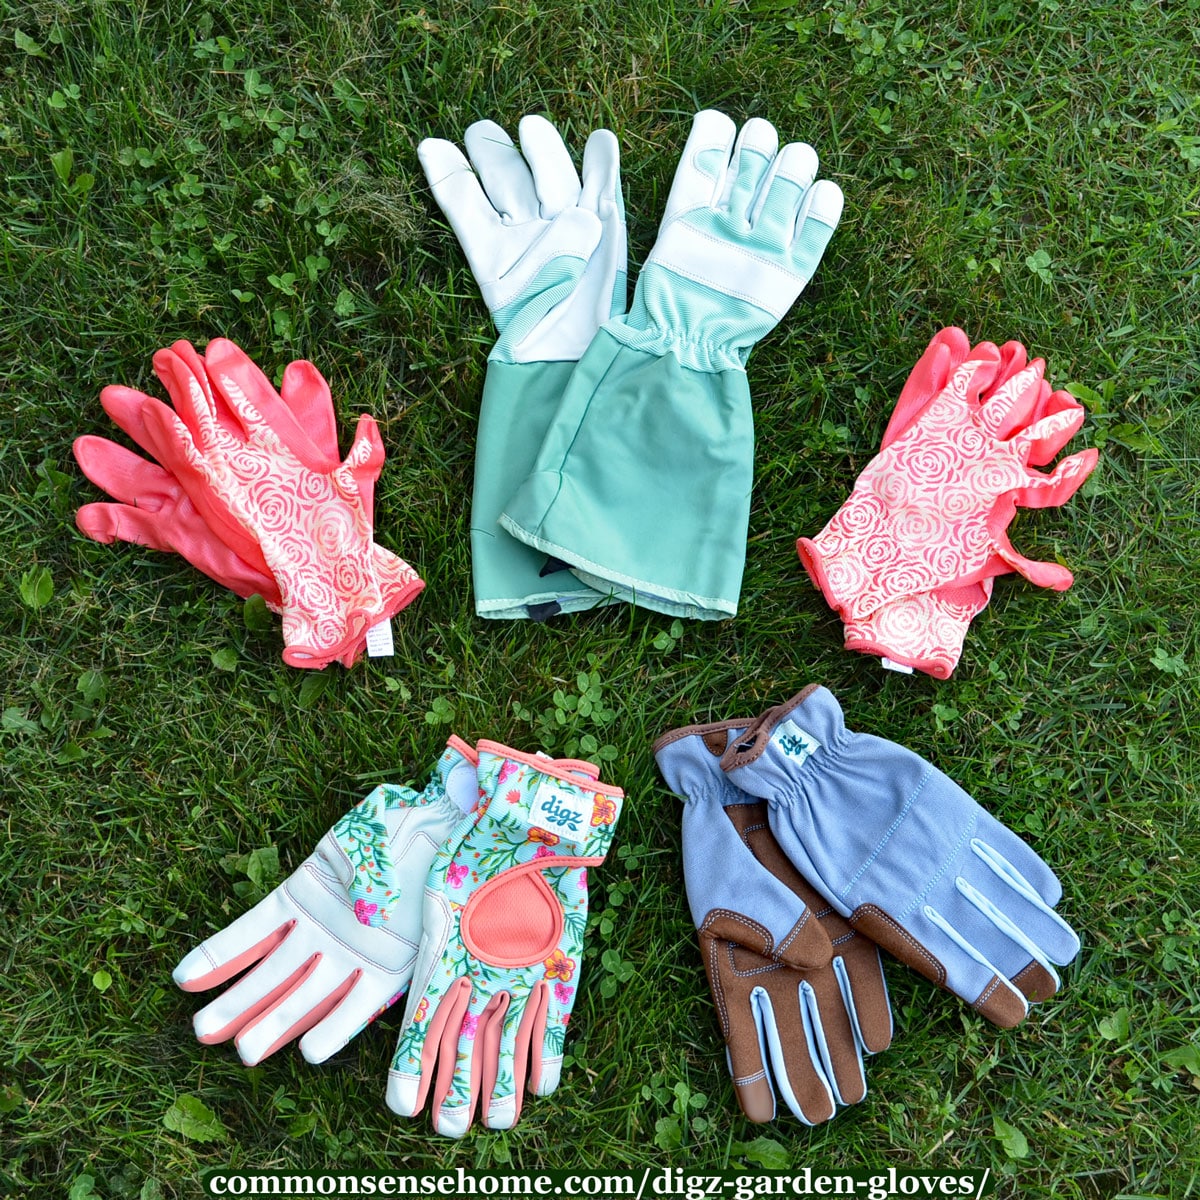 Small DIGZ 77211-23 Planter Garden Gloves 